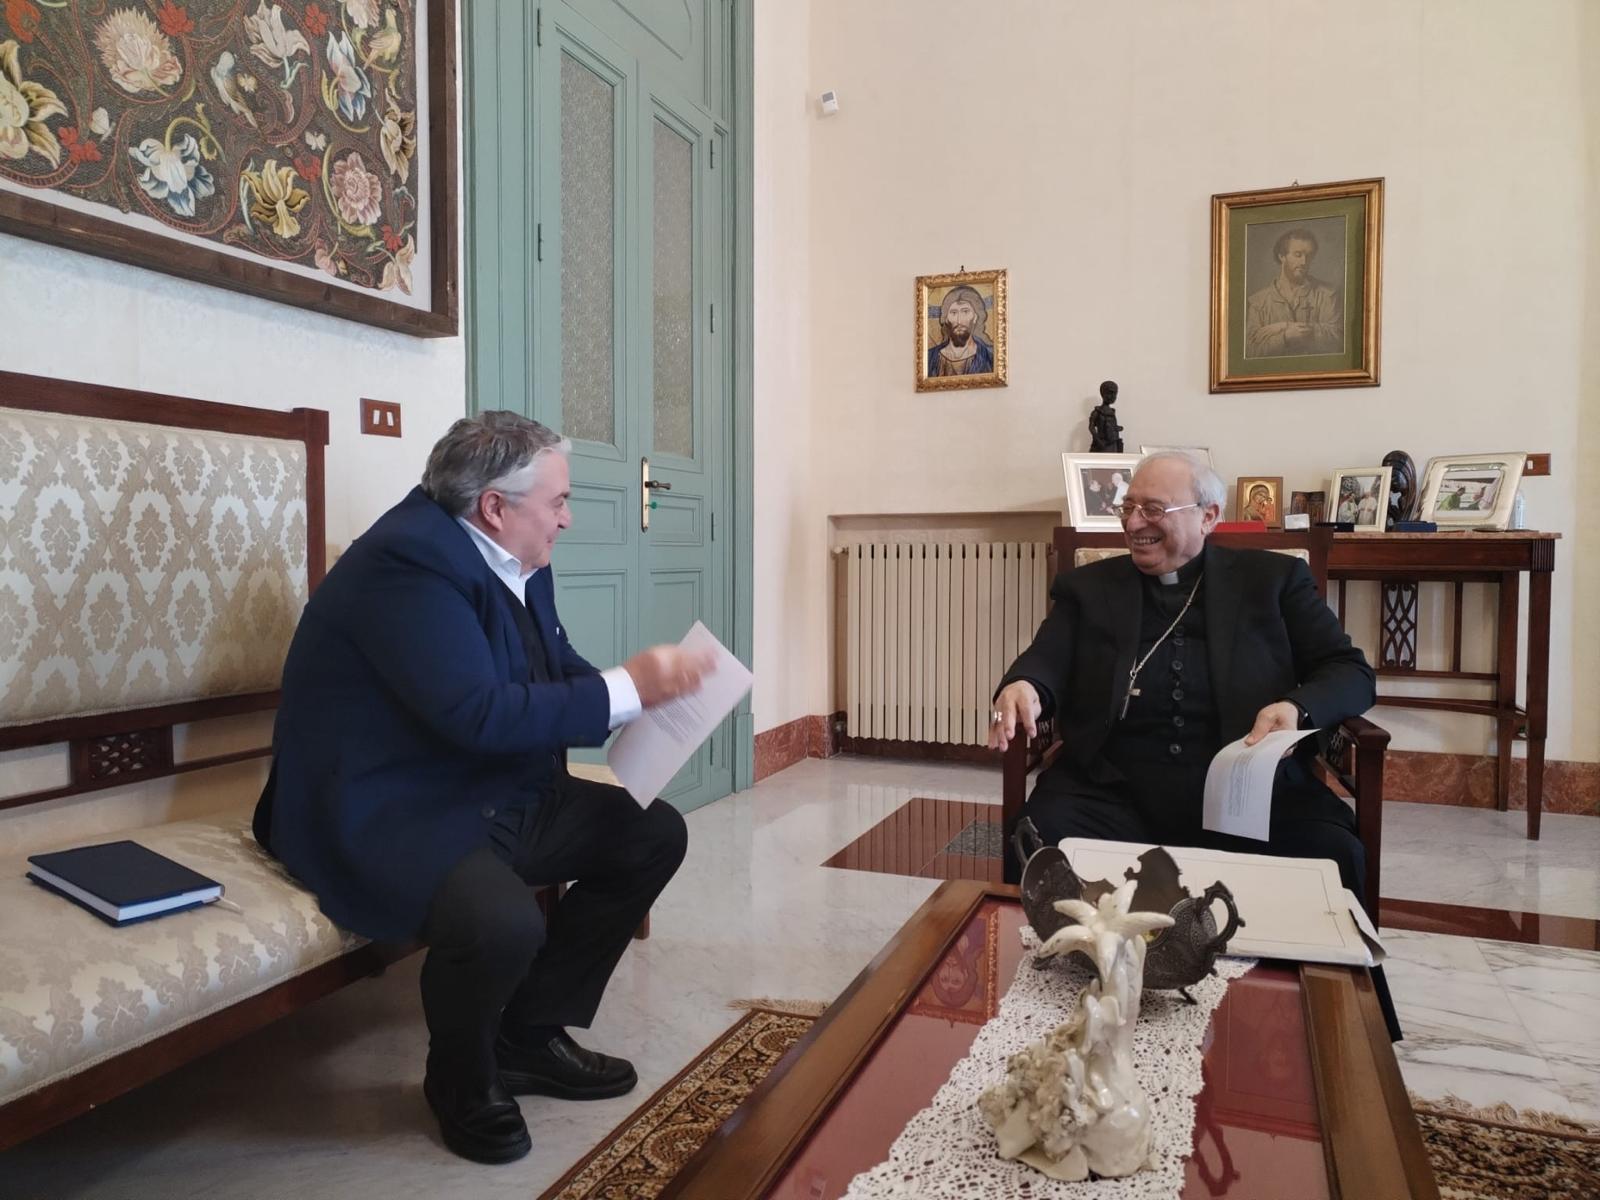 incontro tra il Vescovo di Cefalù e il Commissario Straordinario del Parco delle Madonie.